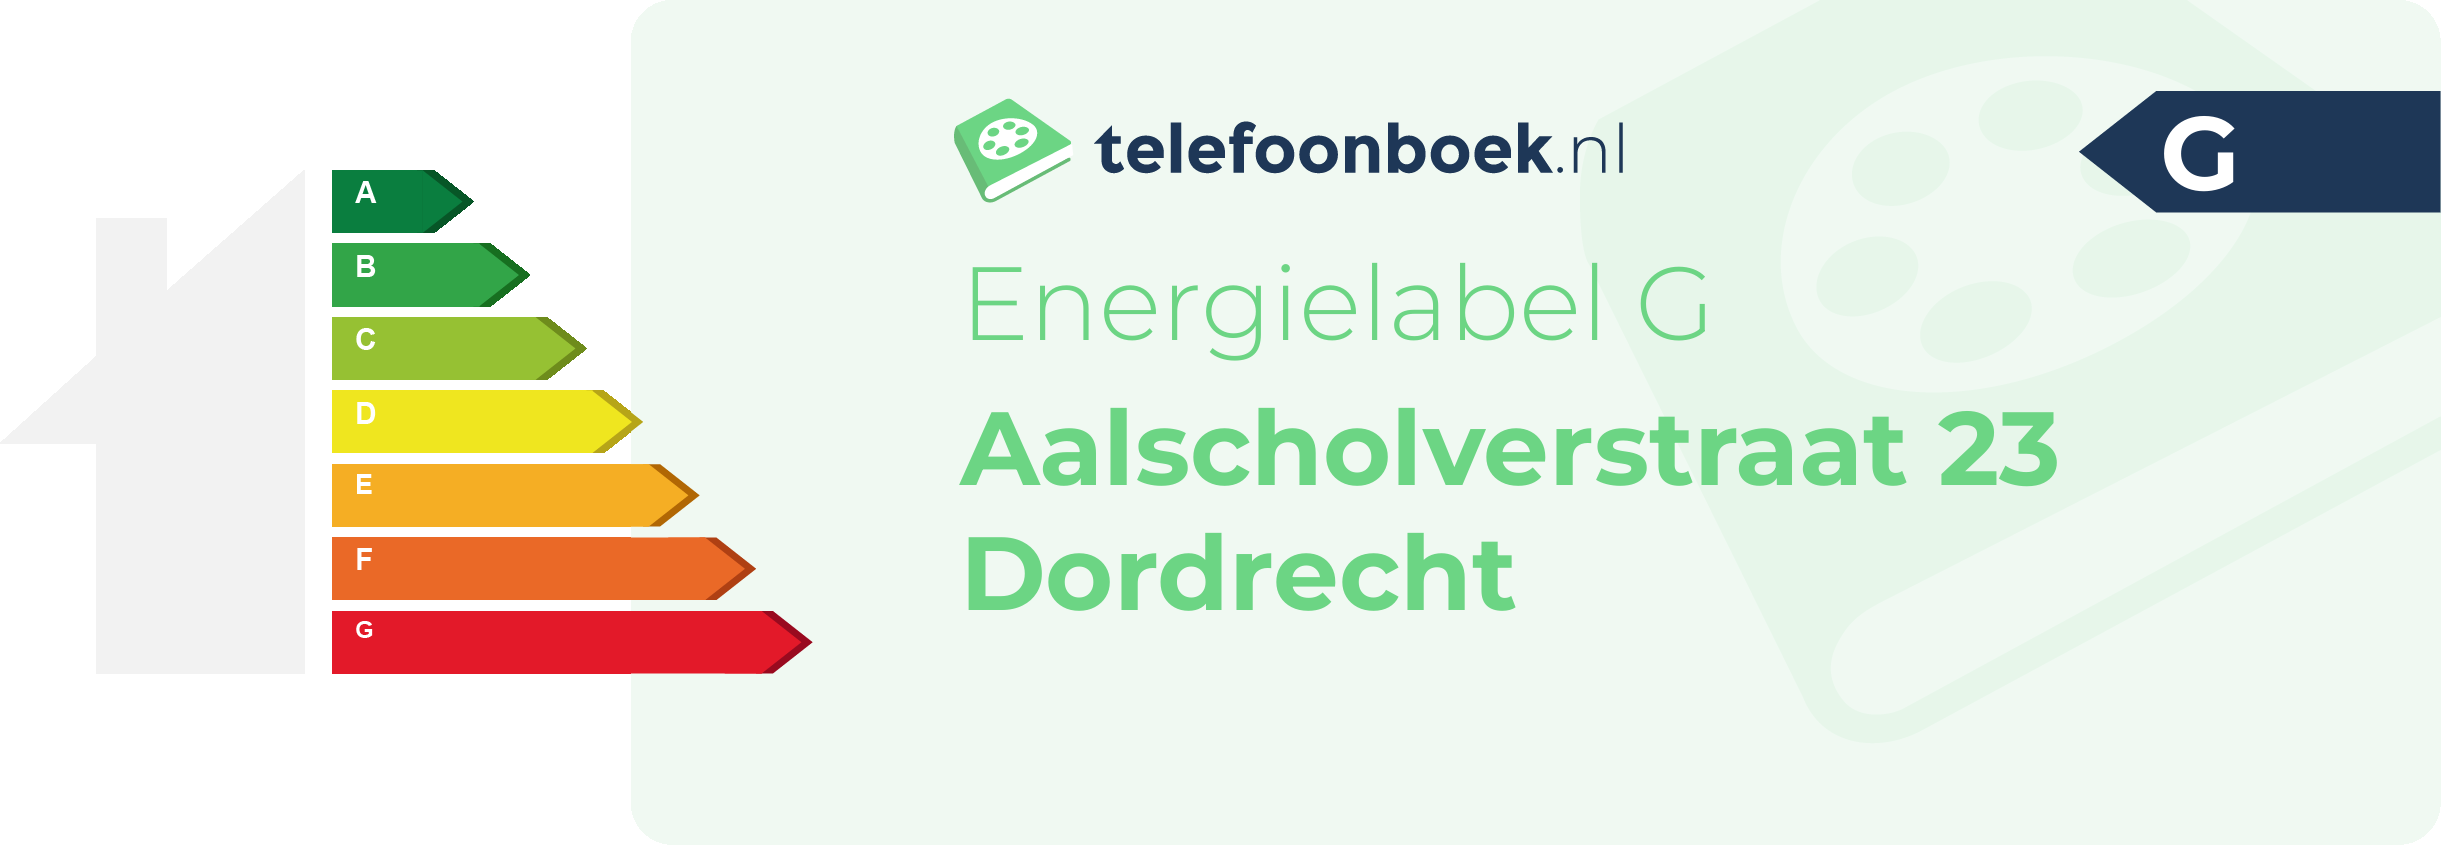 Energielabel Aalscholverstraat 23 Dordrecht